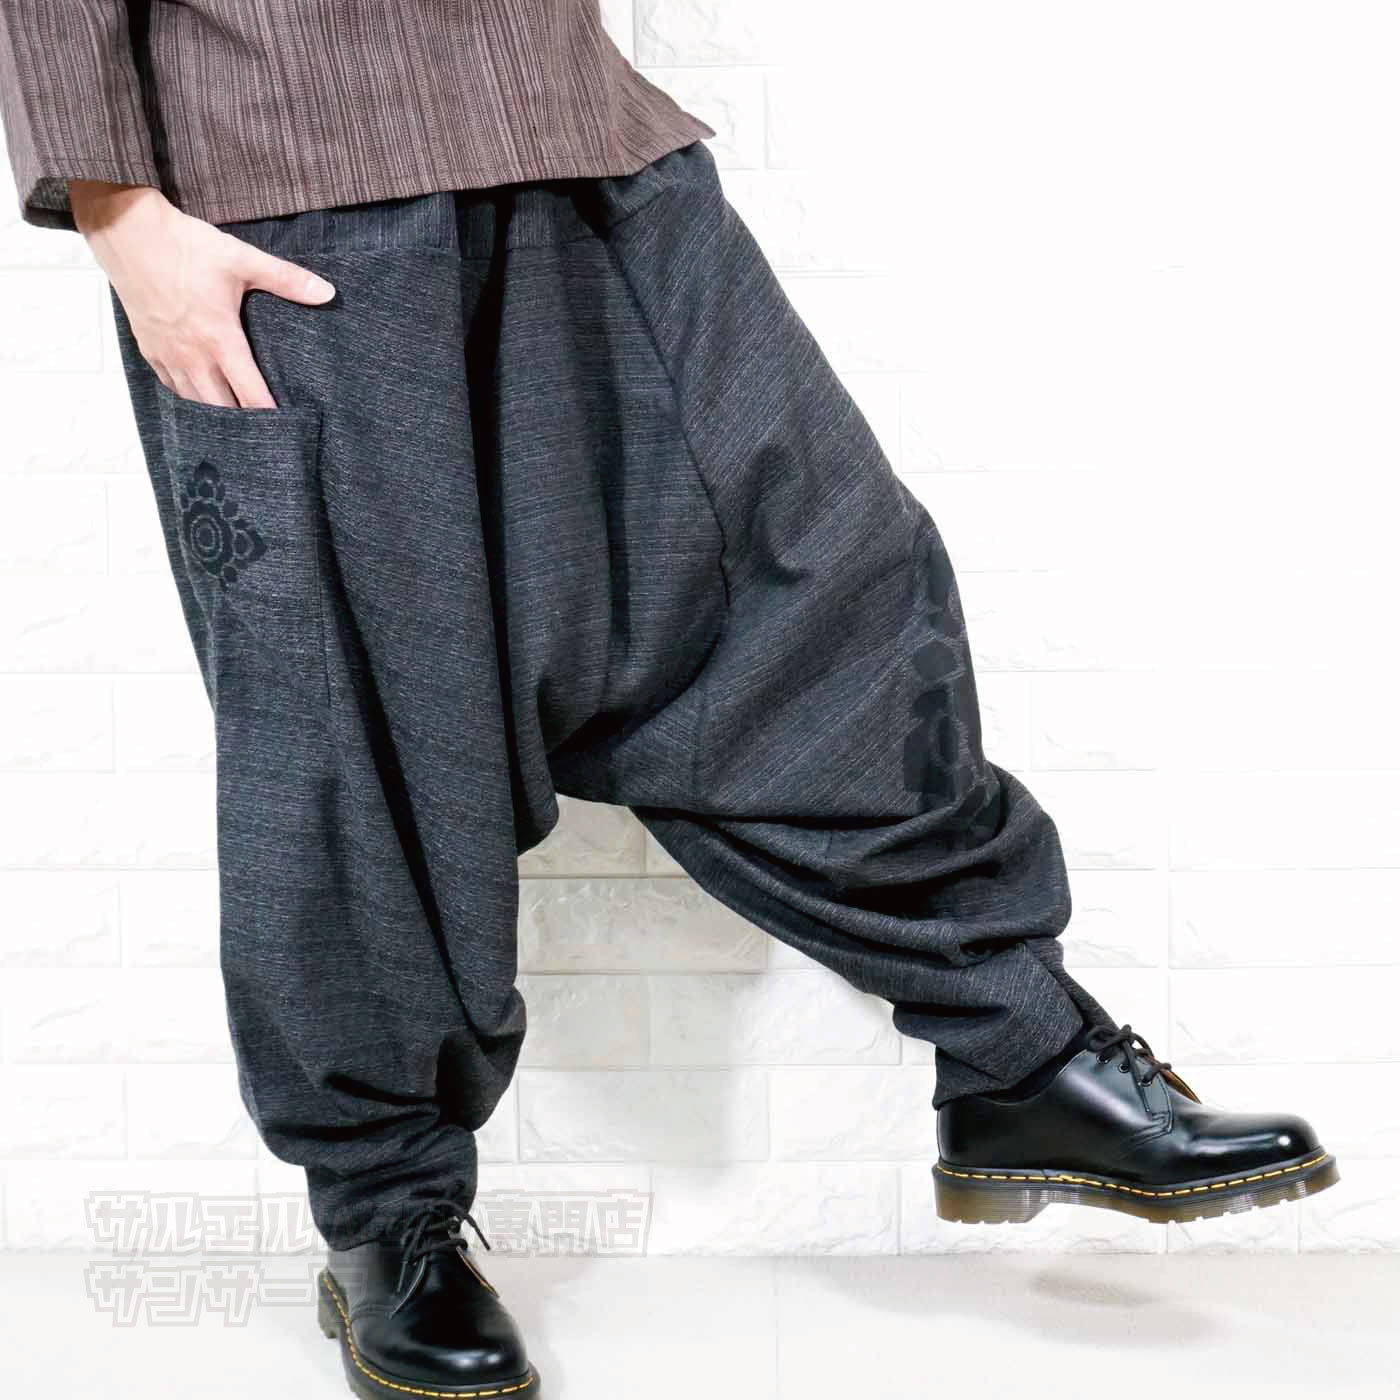 サルエルパンツ アラジンパンツ ワイドパンツ バギーパンツ メンズ レディース 大きいサイズ ゆったりサイズ ヨガ ダンス エスニック アジアン  ファッションブラック